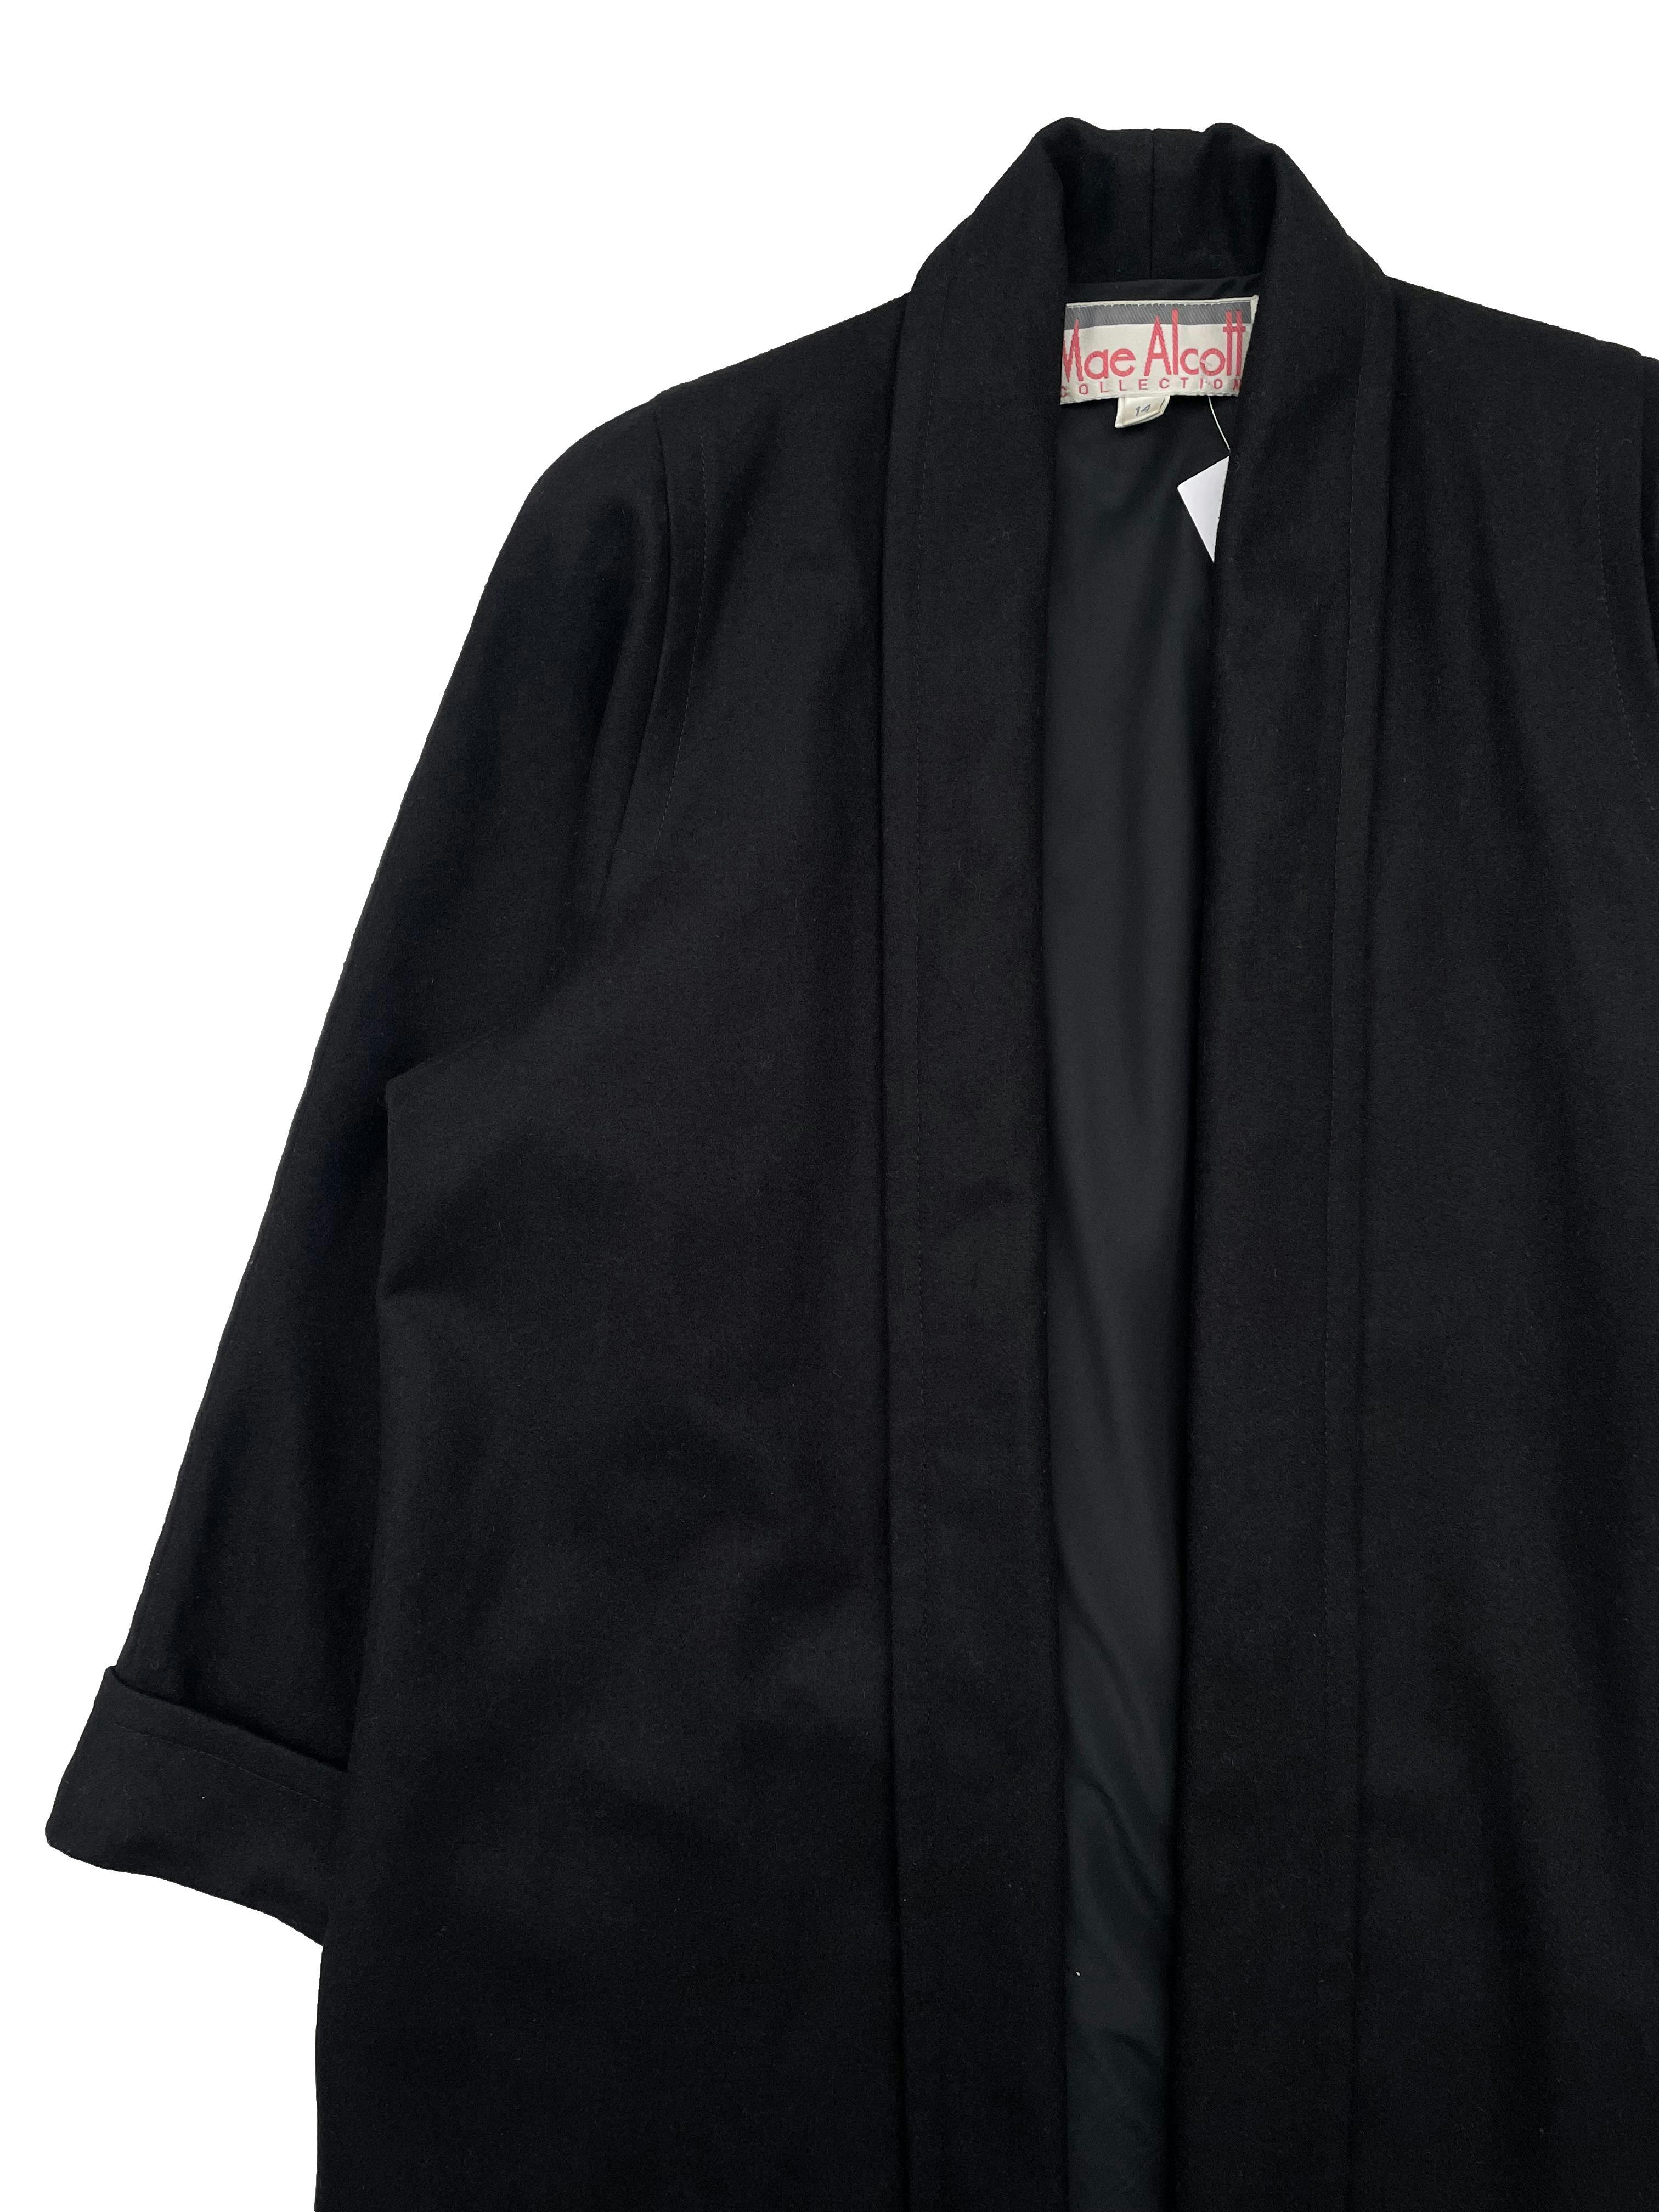 Saco negro Mae Alcott de paño, modelo abierto con forro, hombreras y bolsillos laterales. Busto 150cm, Largo 100cm.